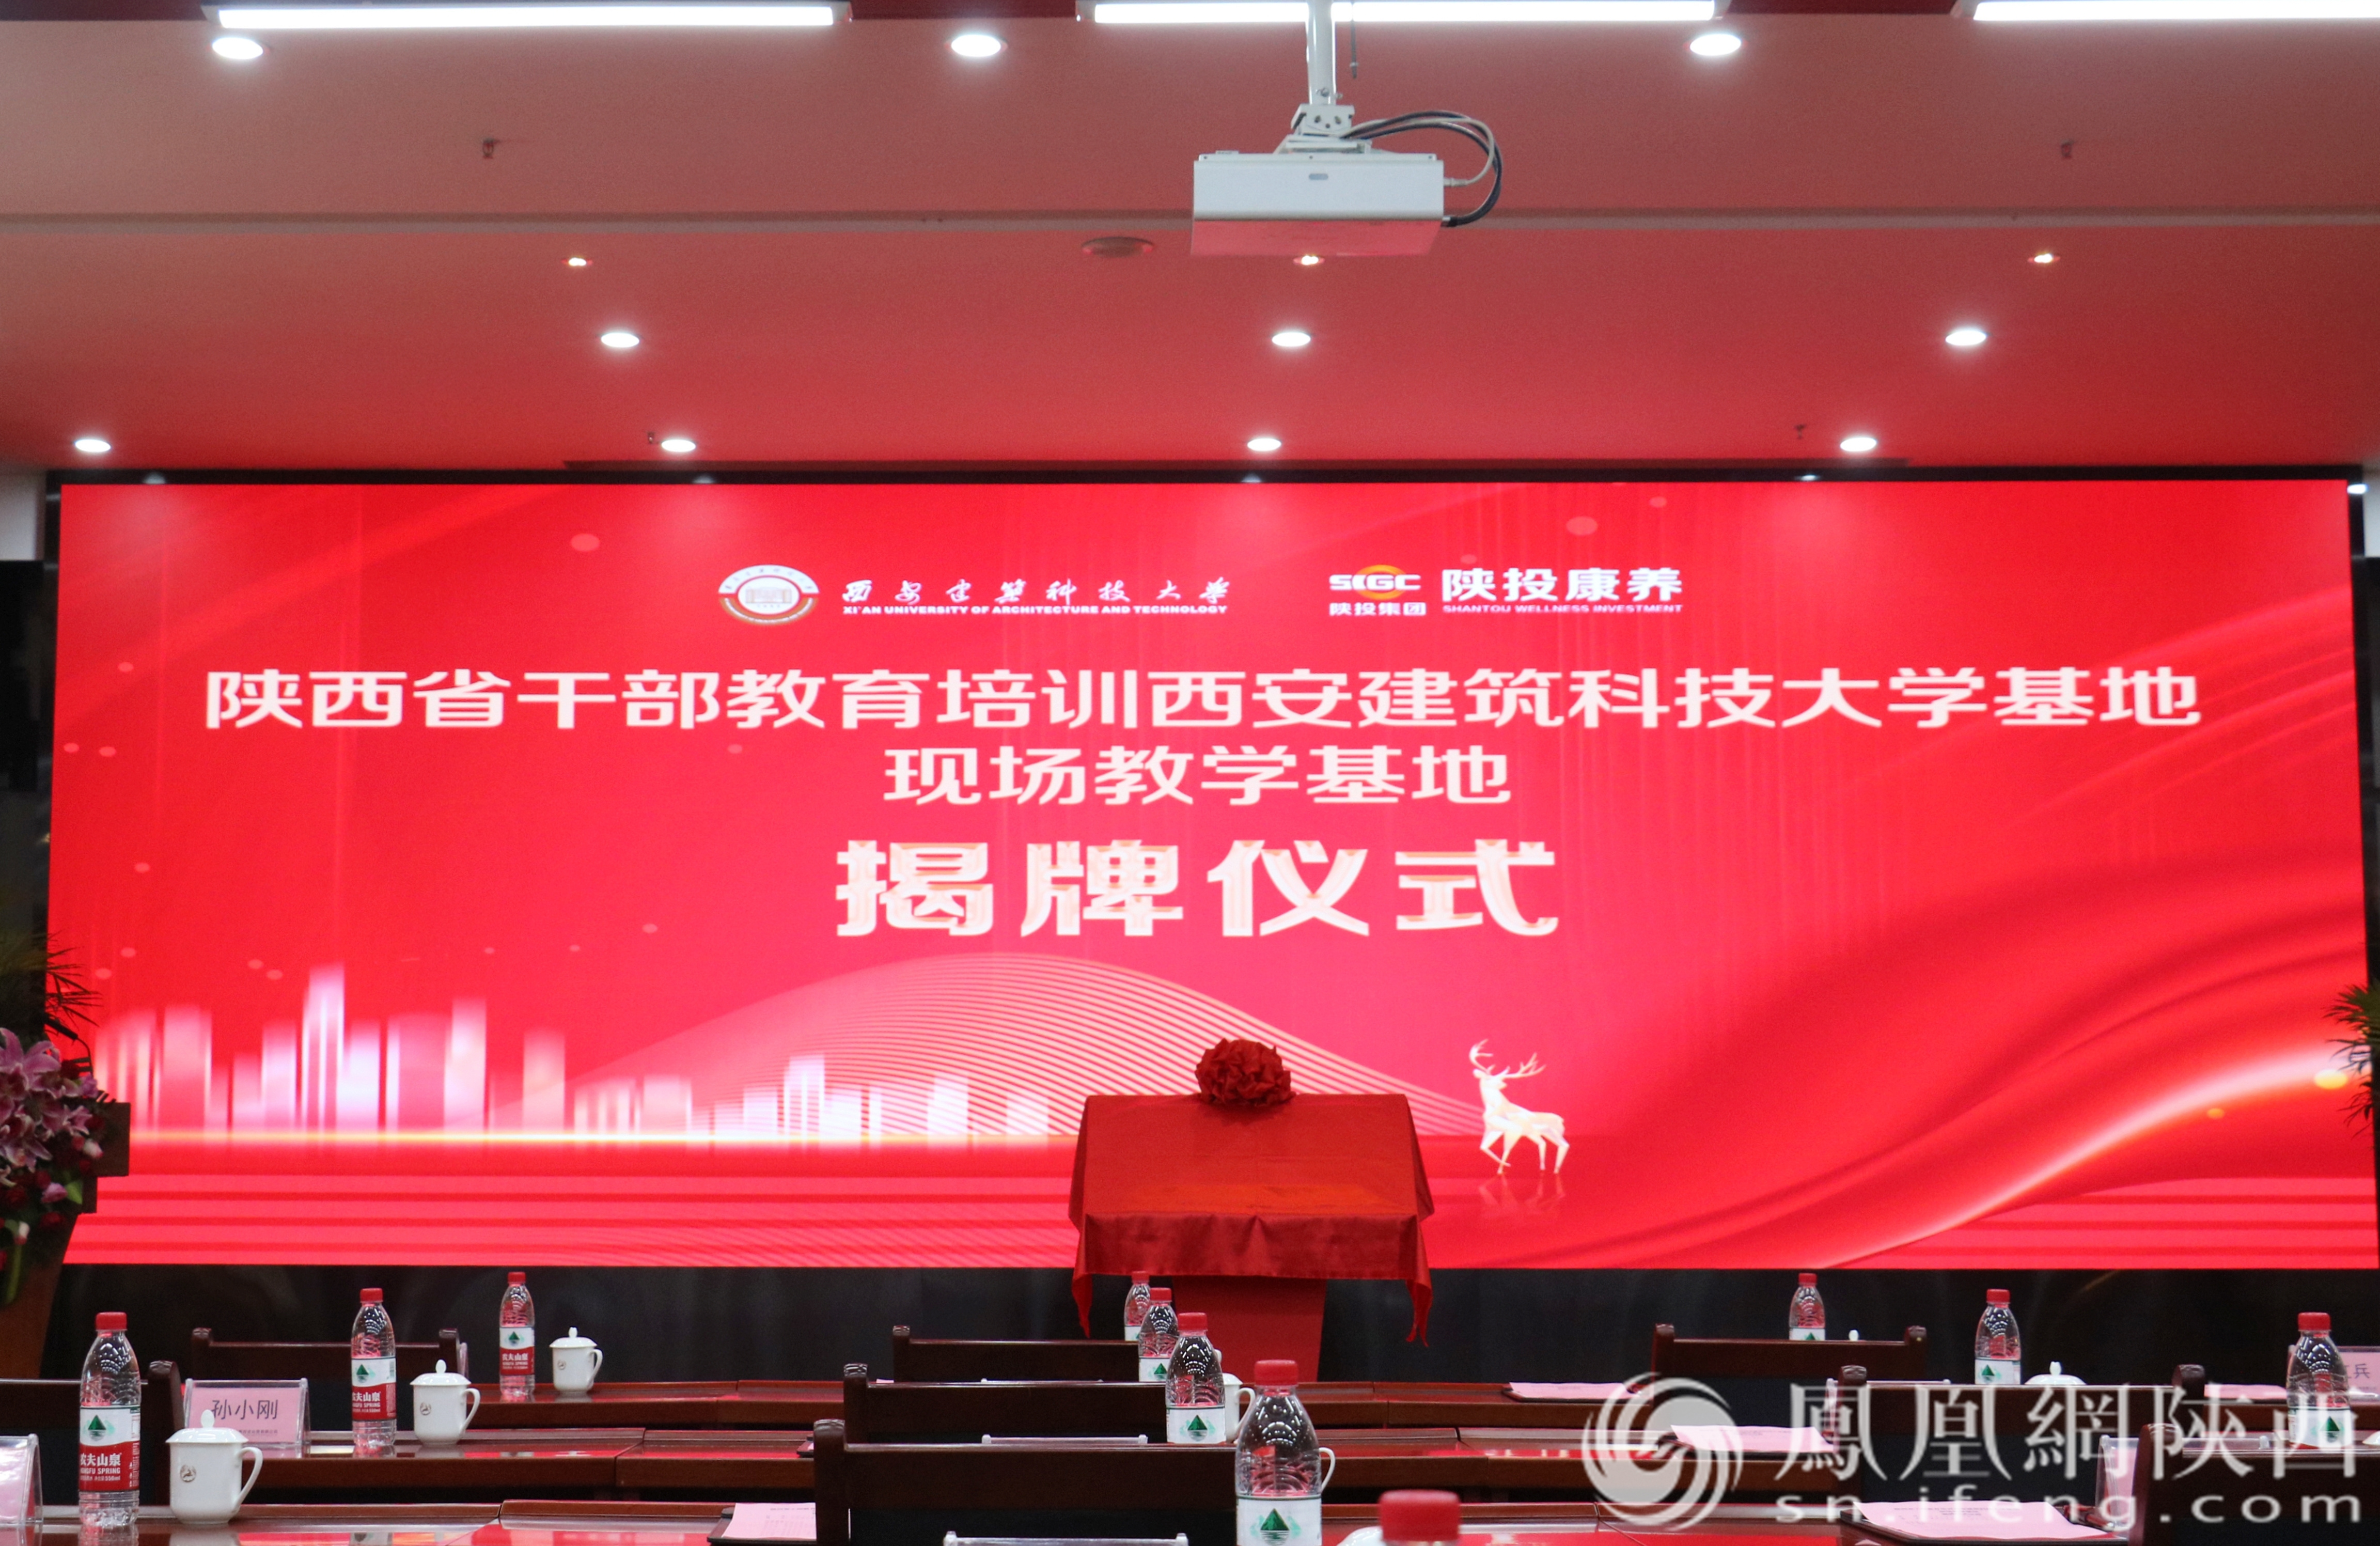 陕西省干部教育培训西安建筑科技大学基地现场教学基地揭牌